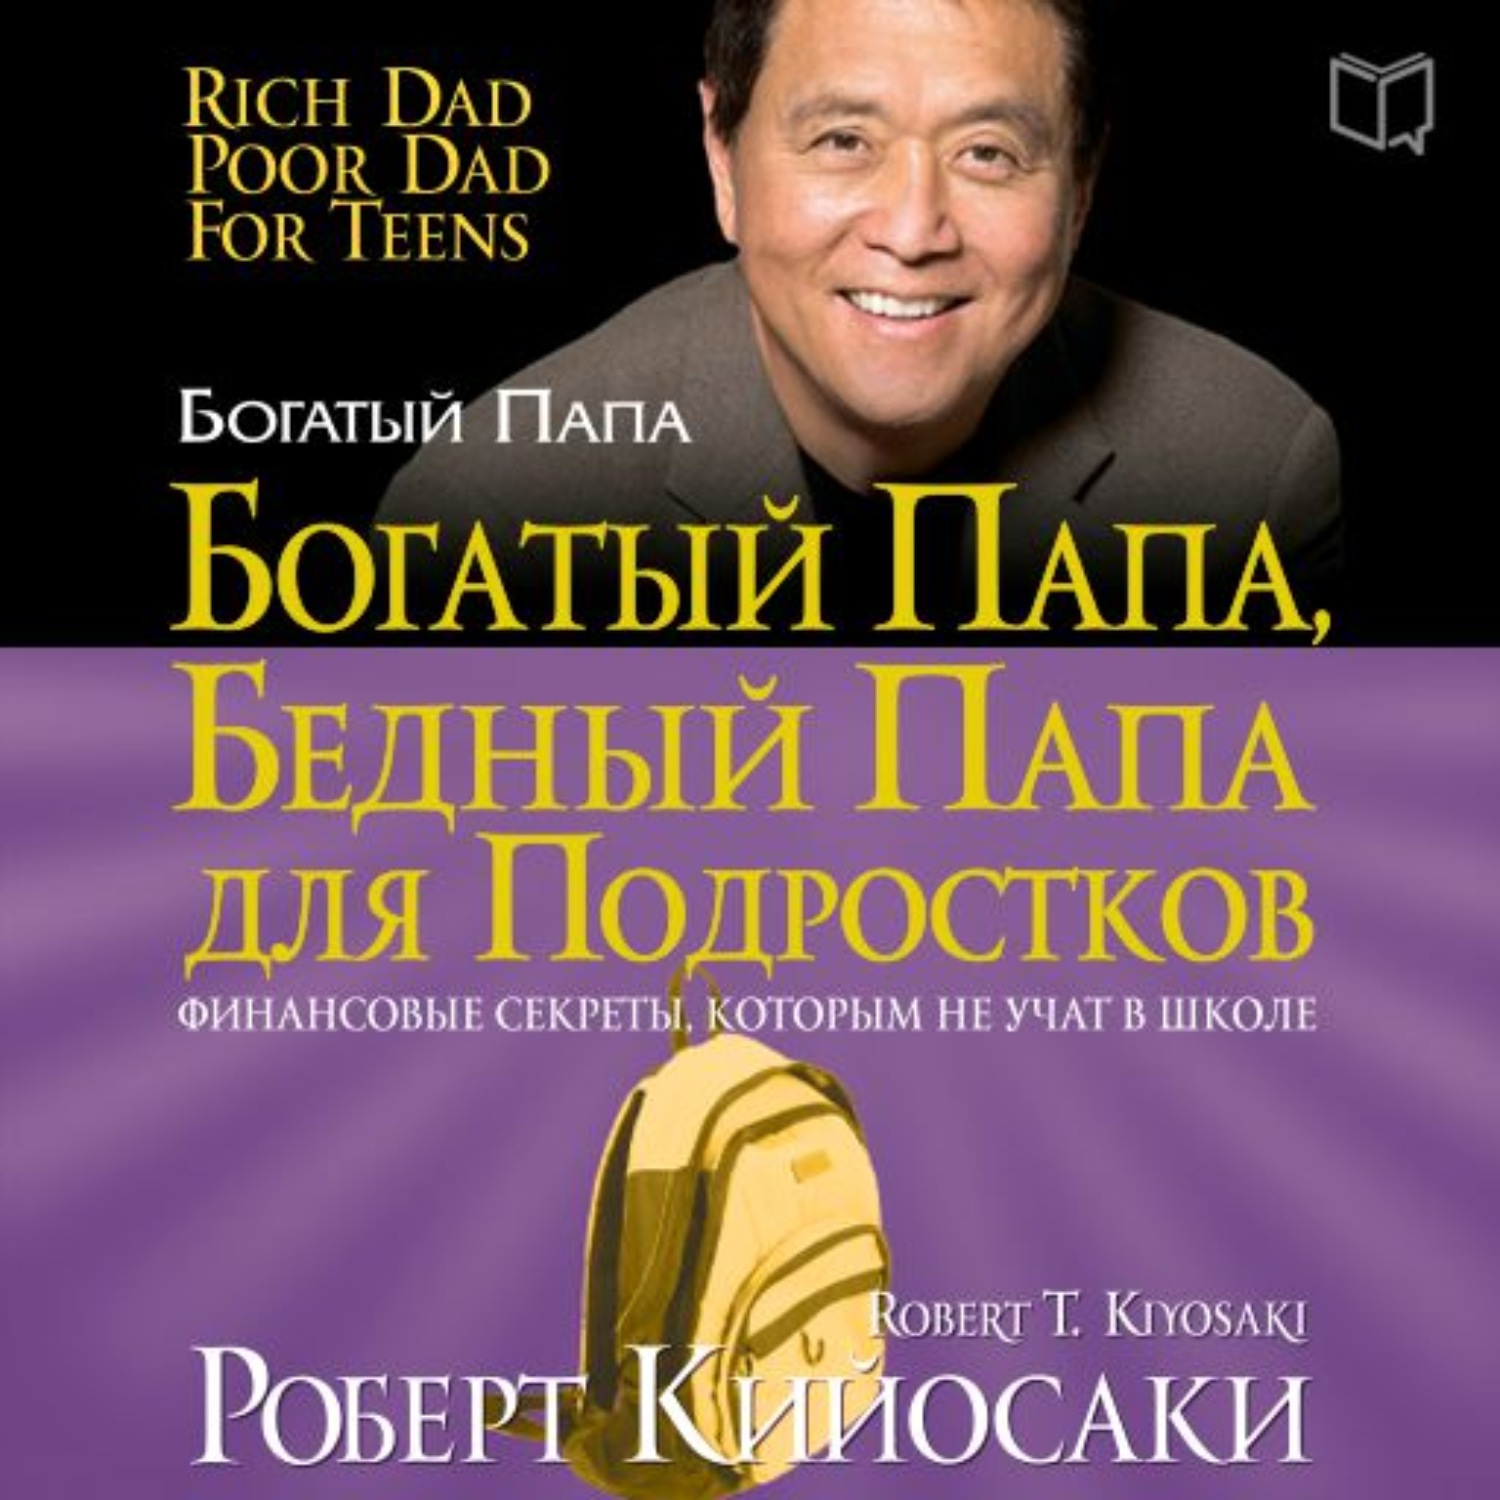 Слушать книгу бедный папа. Р.Кийосаки богатый папа бедный папа.